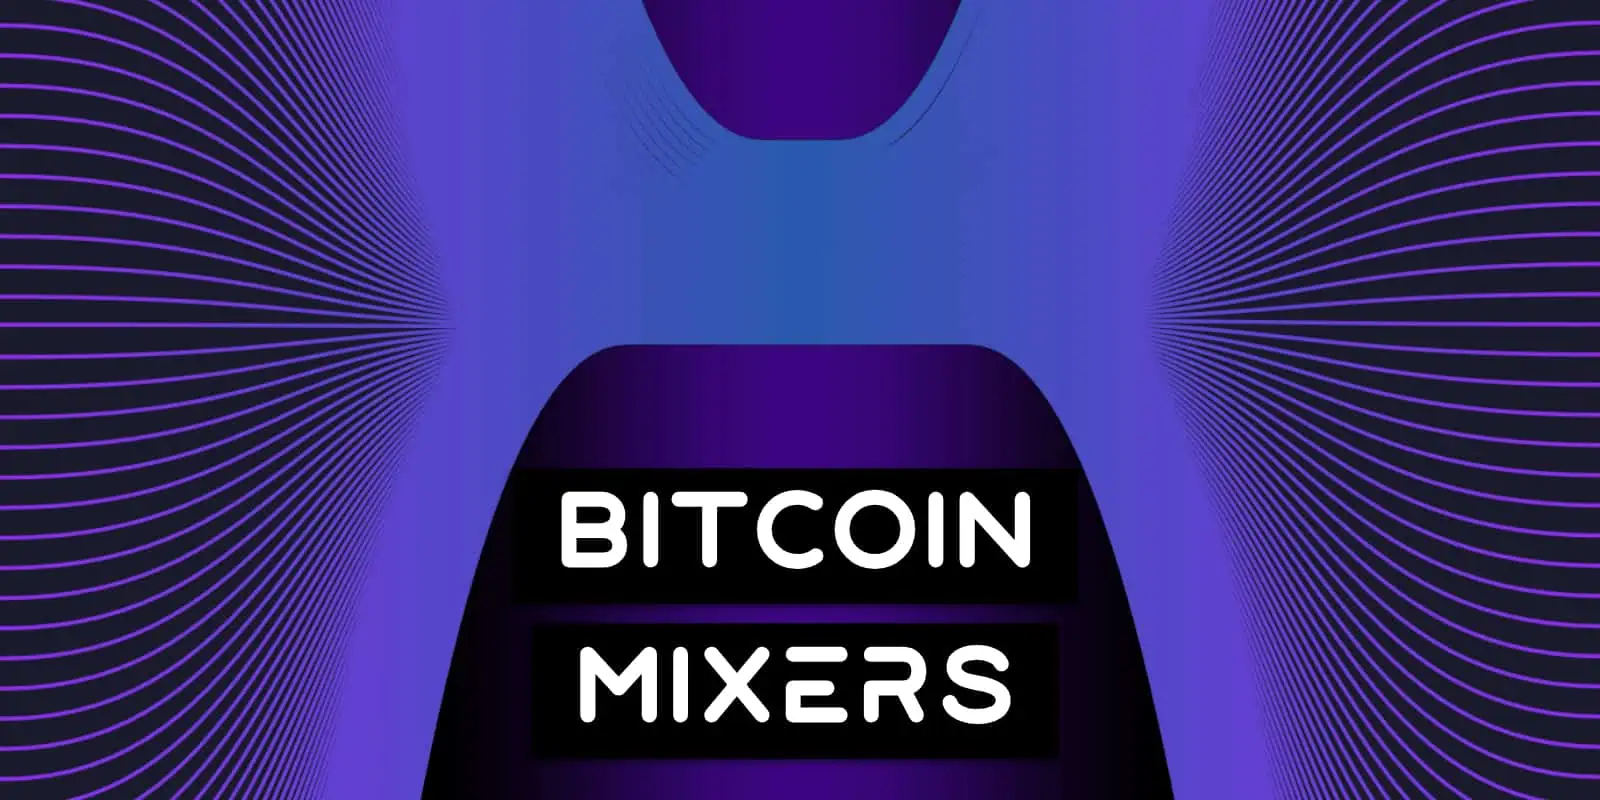 Bitcoin Mixer